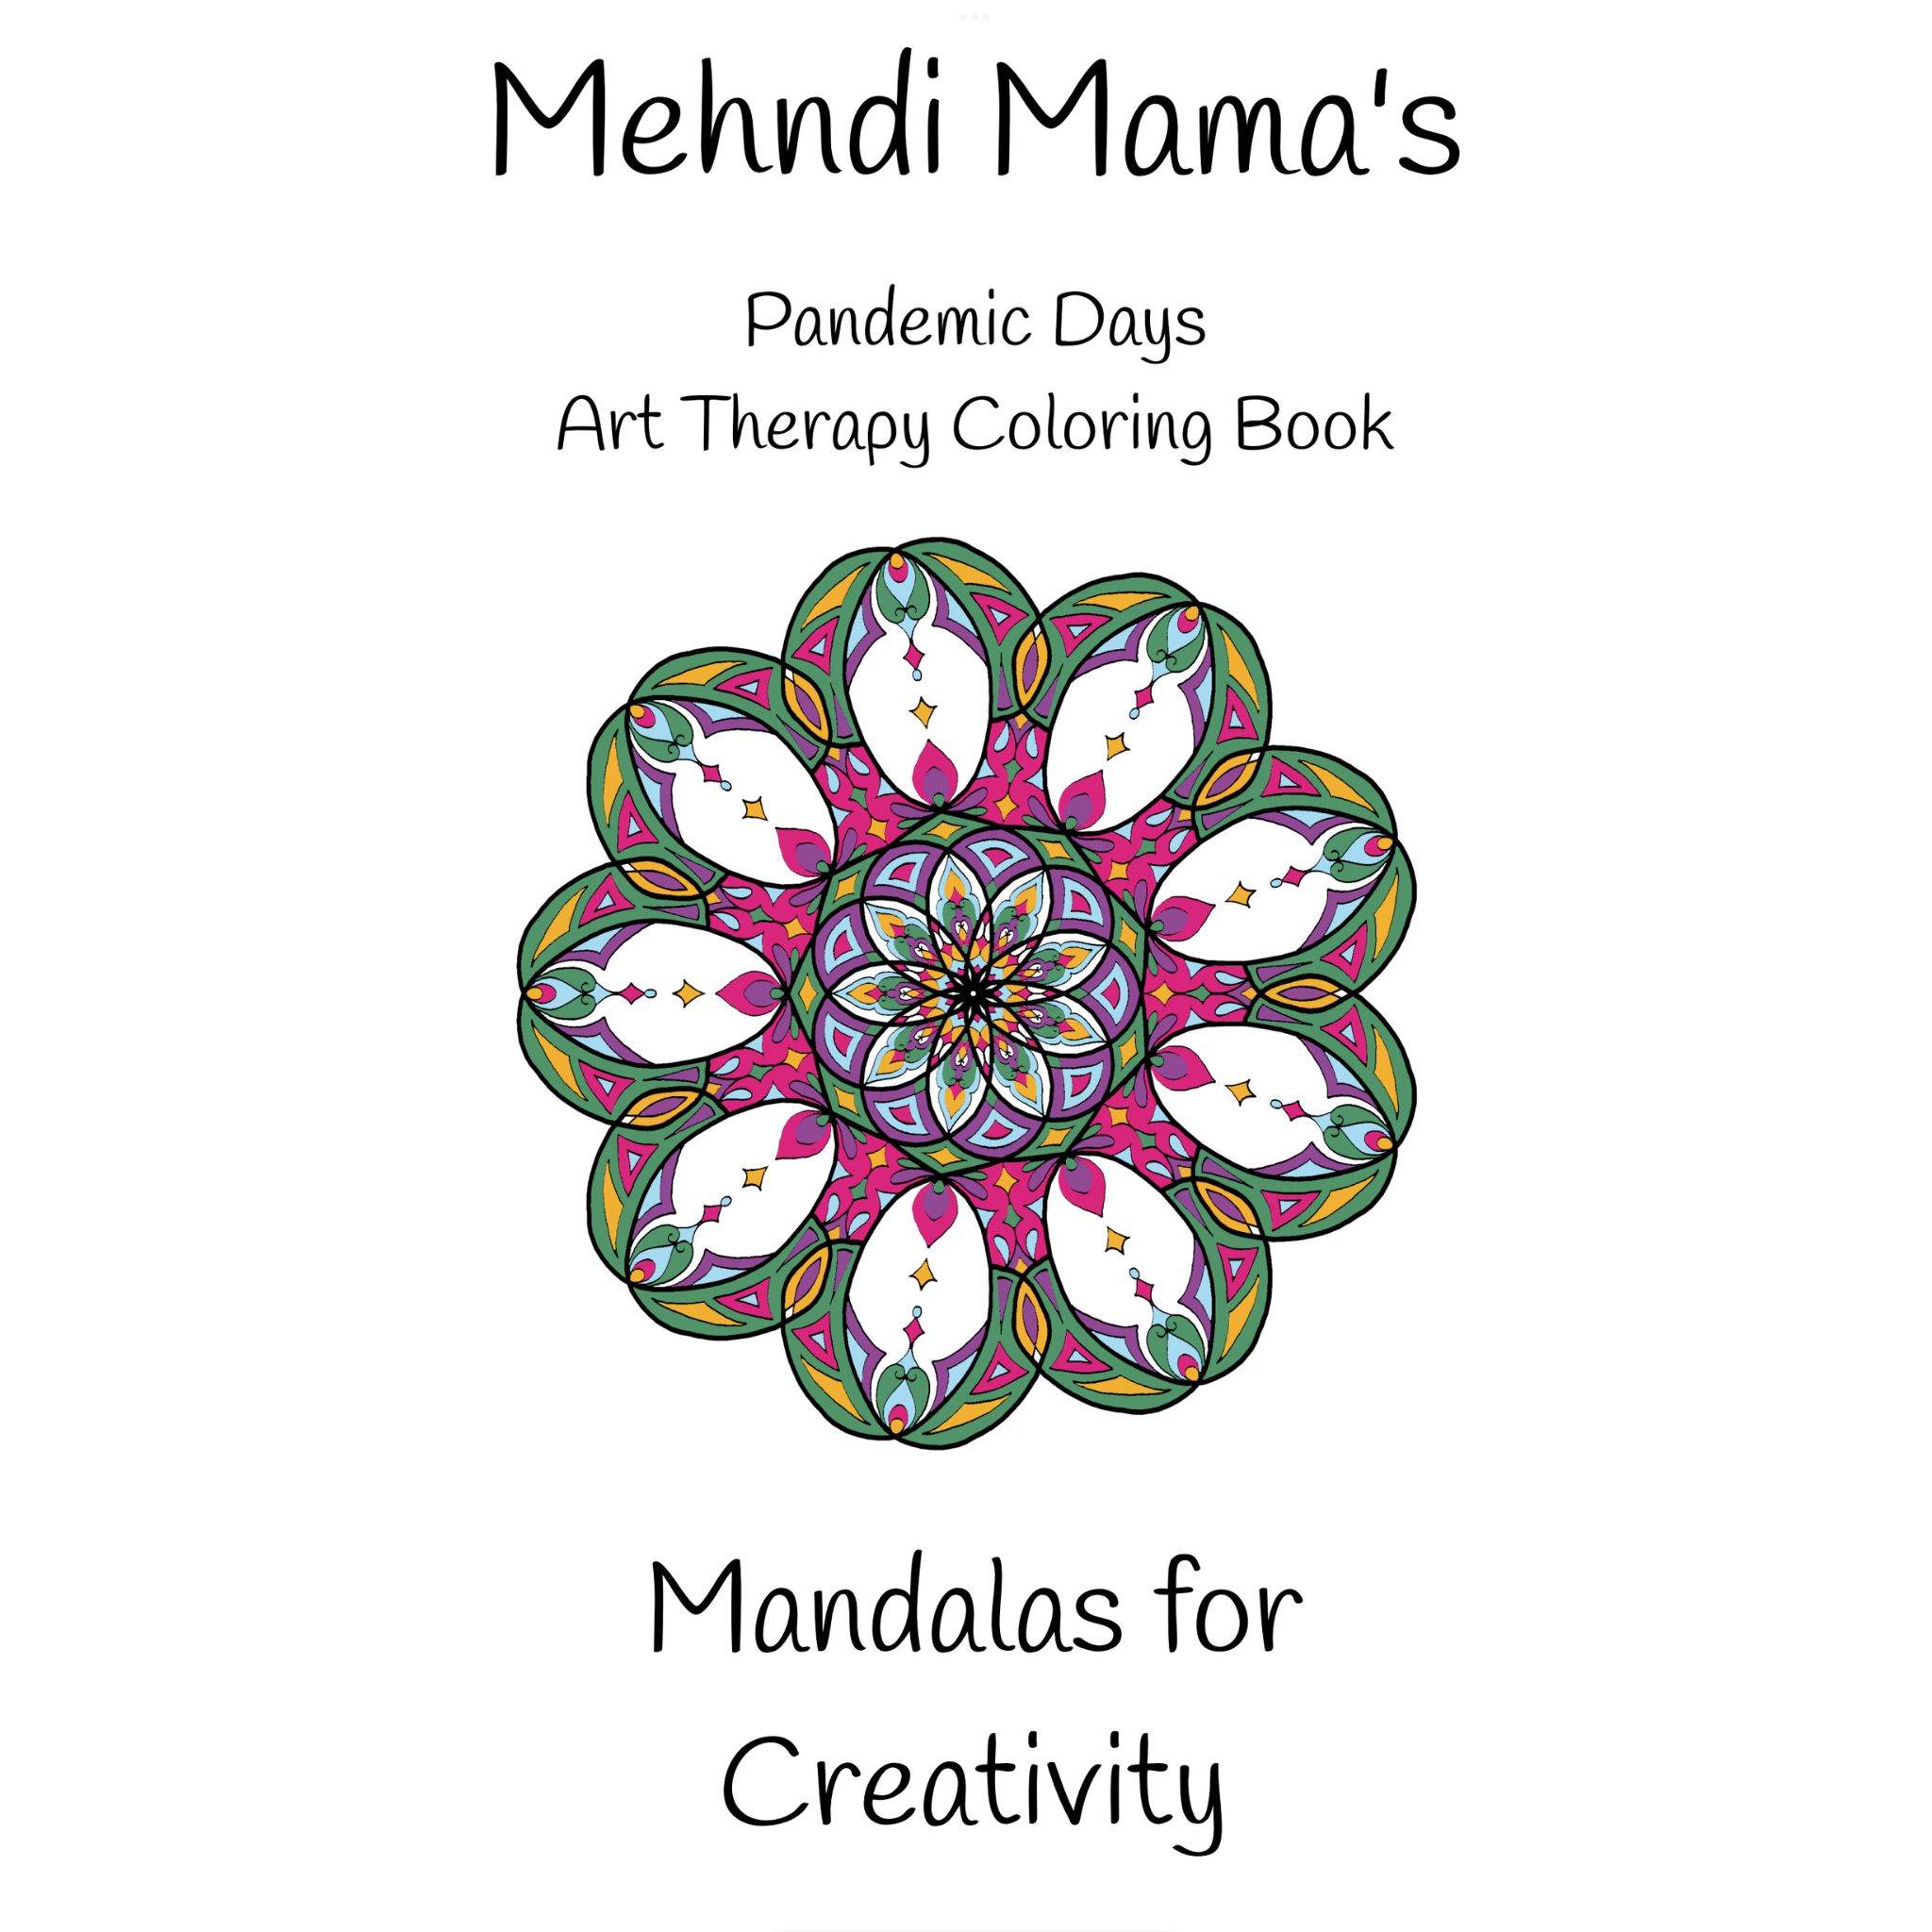 Mehndi mamas mandala coloring book for creativity